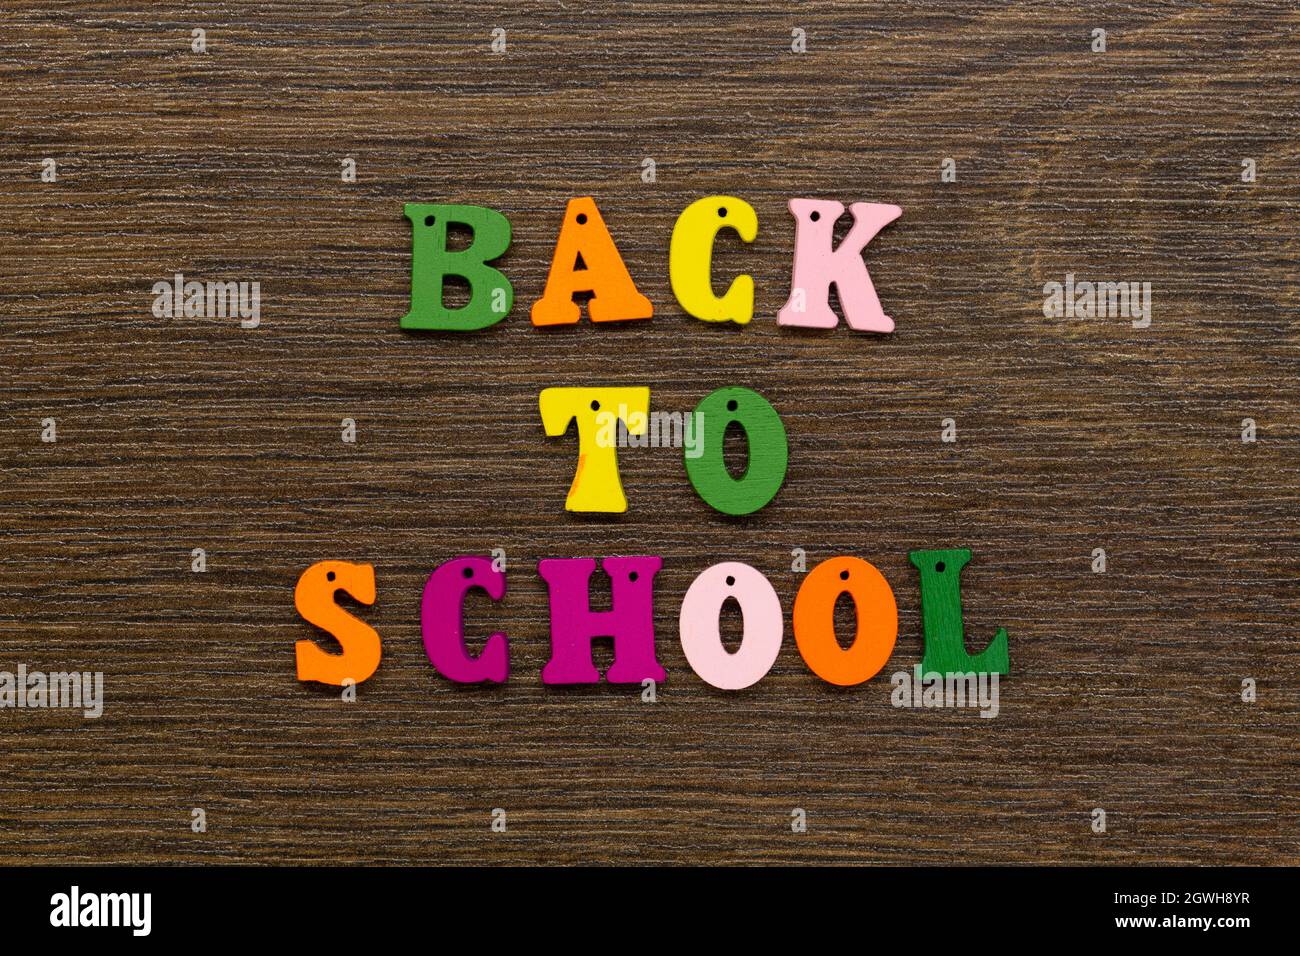 Inschrift der Worte des Slogans Back to School in mehrfarbigen Buchstaben auf einem schönen Hintergrund. Bunte Buchstaben des englischen Alphabets Stockfoto